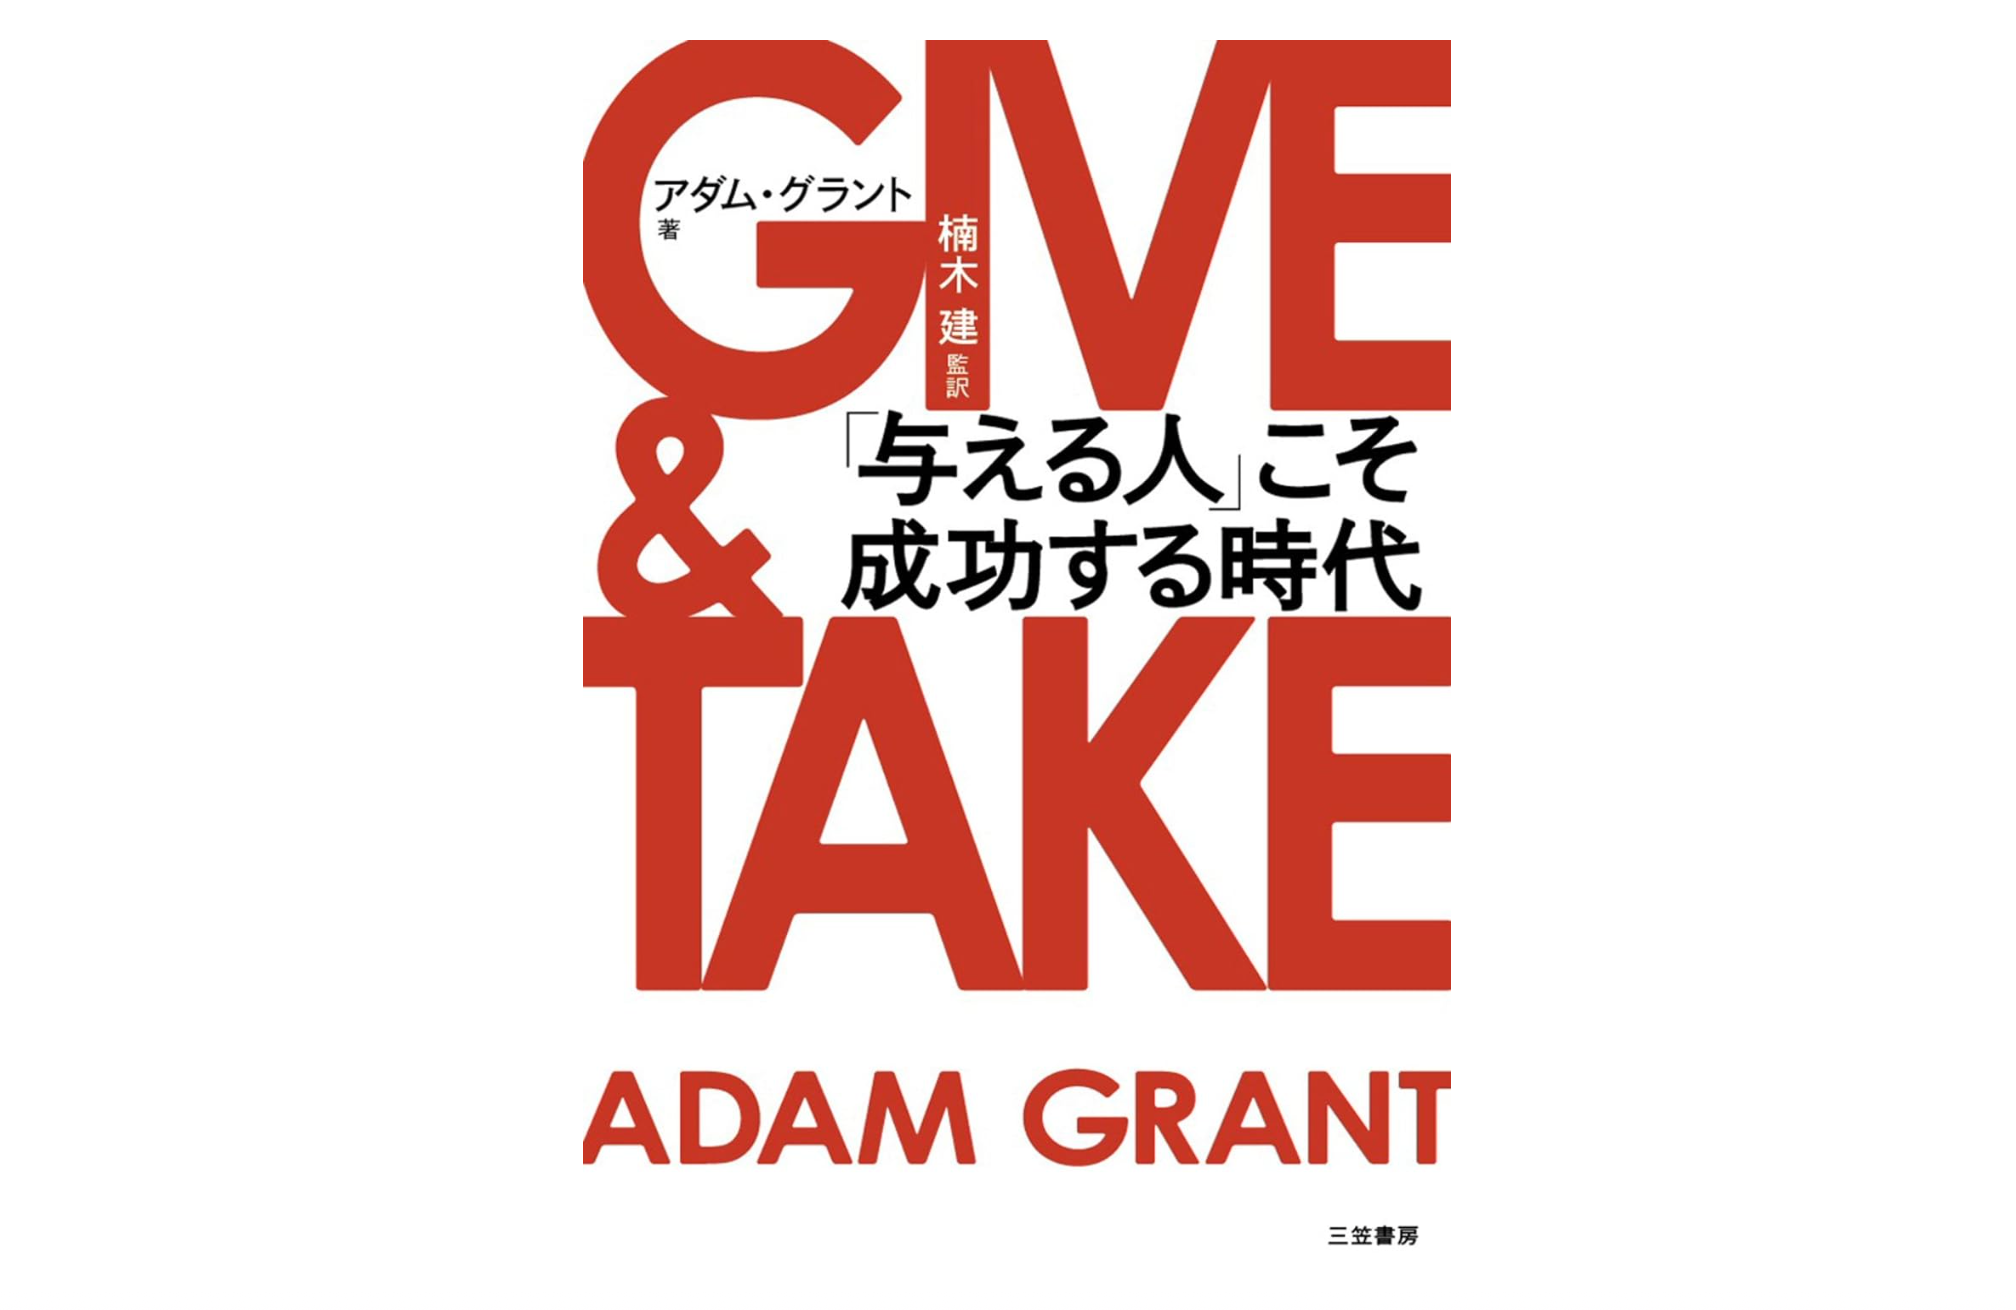 「与える人」こそ成功する時代　中野究　GIVE&TAKE　アダム・グラント　テイカー　ギバー